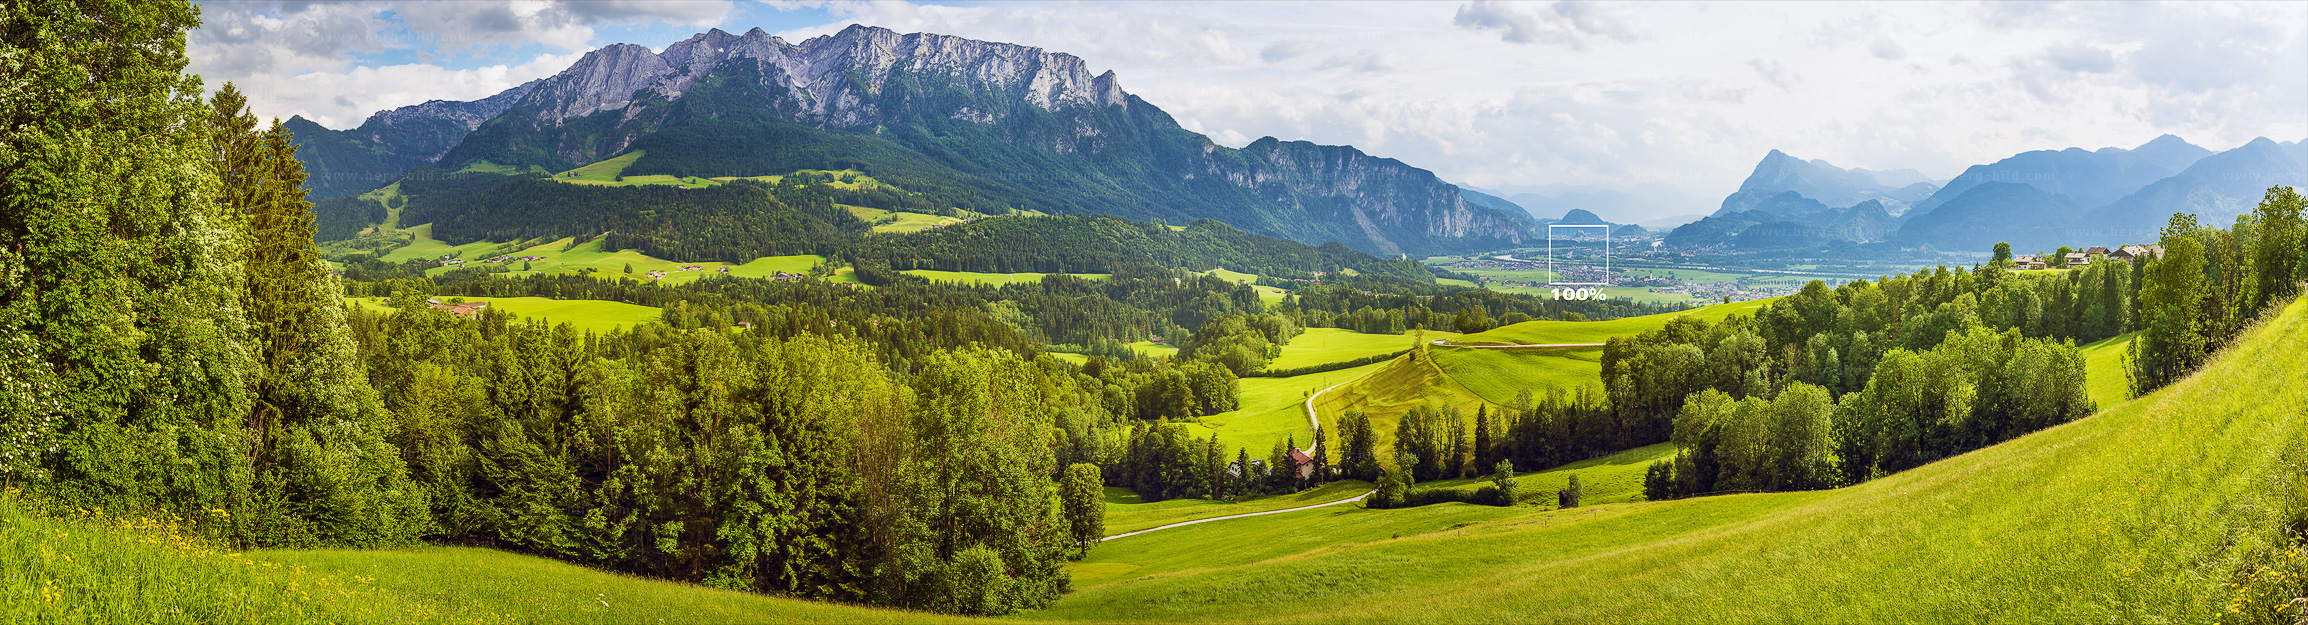 Blick auf Kaisergebirge und Kufstein groß und hochauflösend